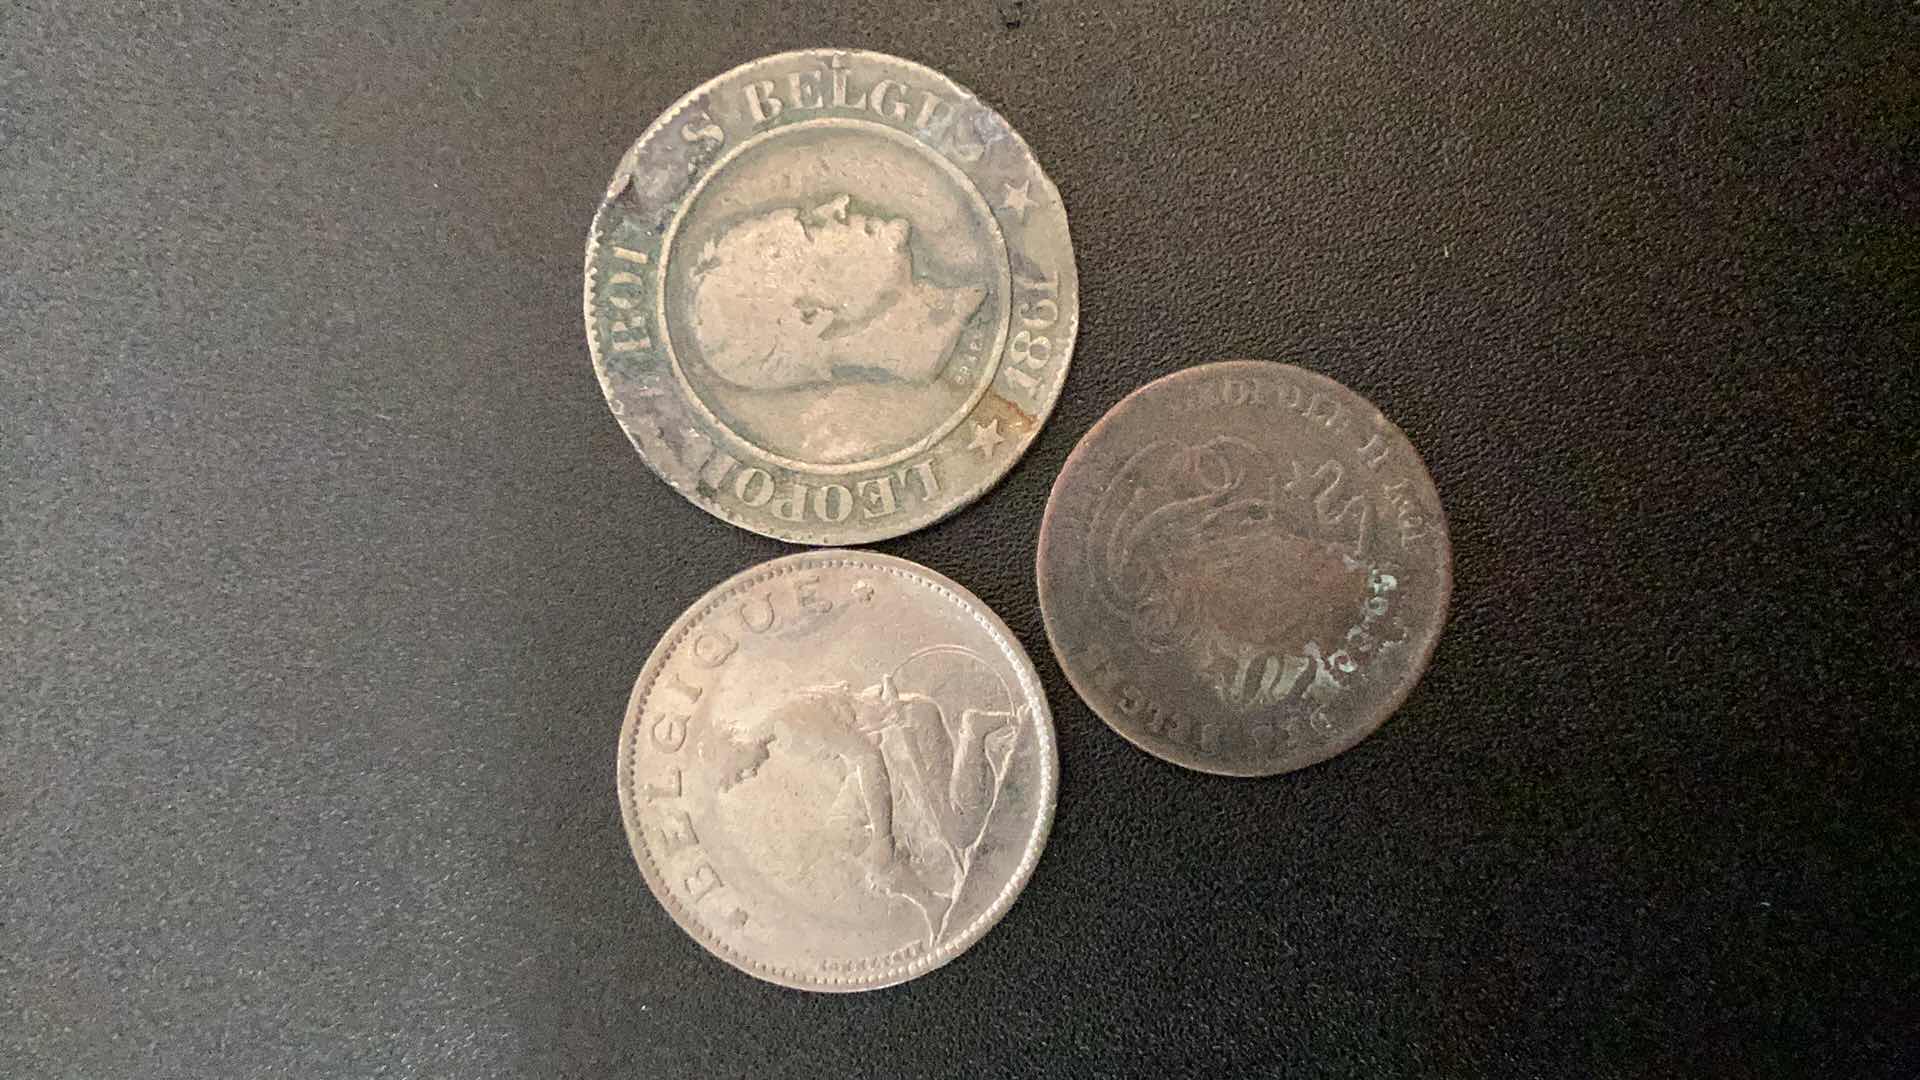 Photo 2 of 3 COLLECTIBLE COINS - BELGIUM 1870, 1861, 1923